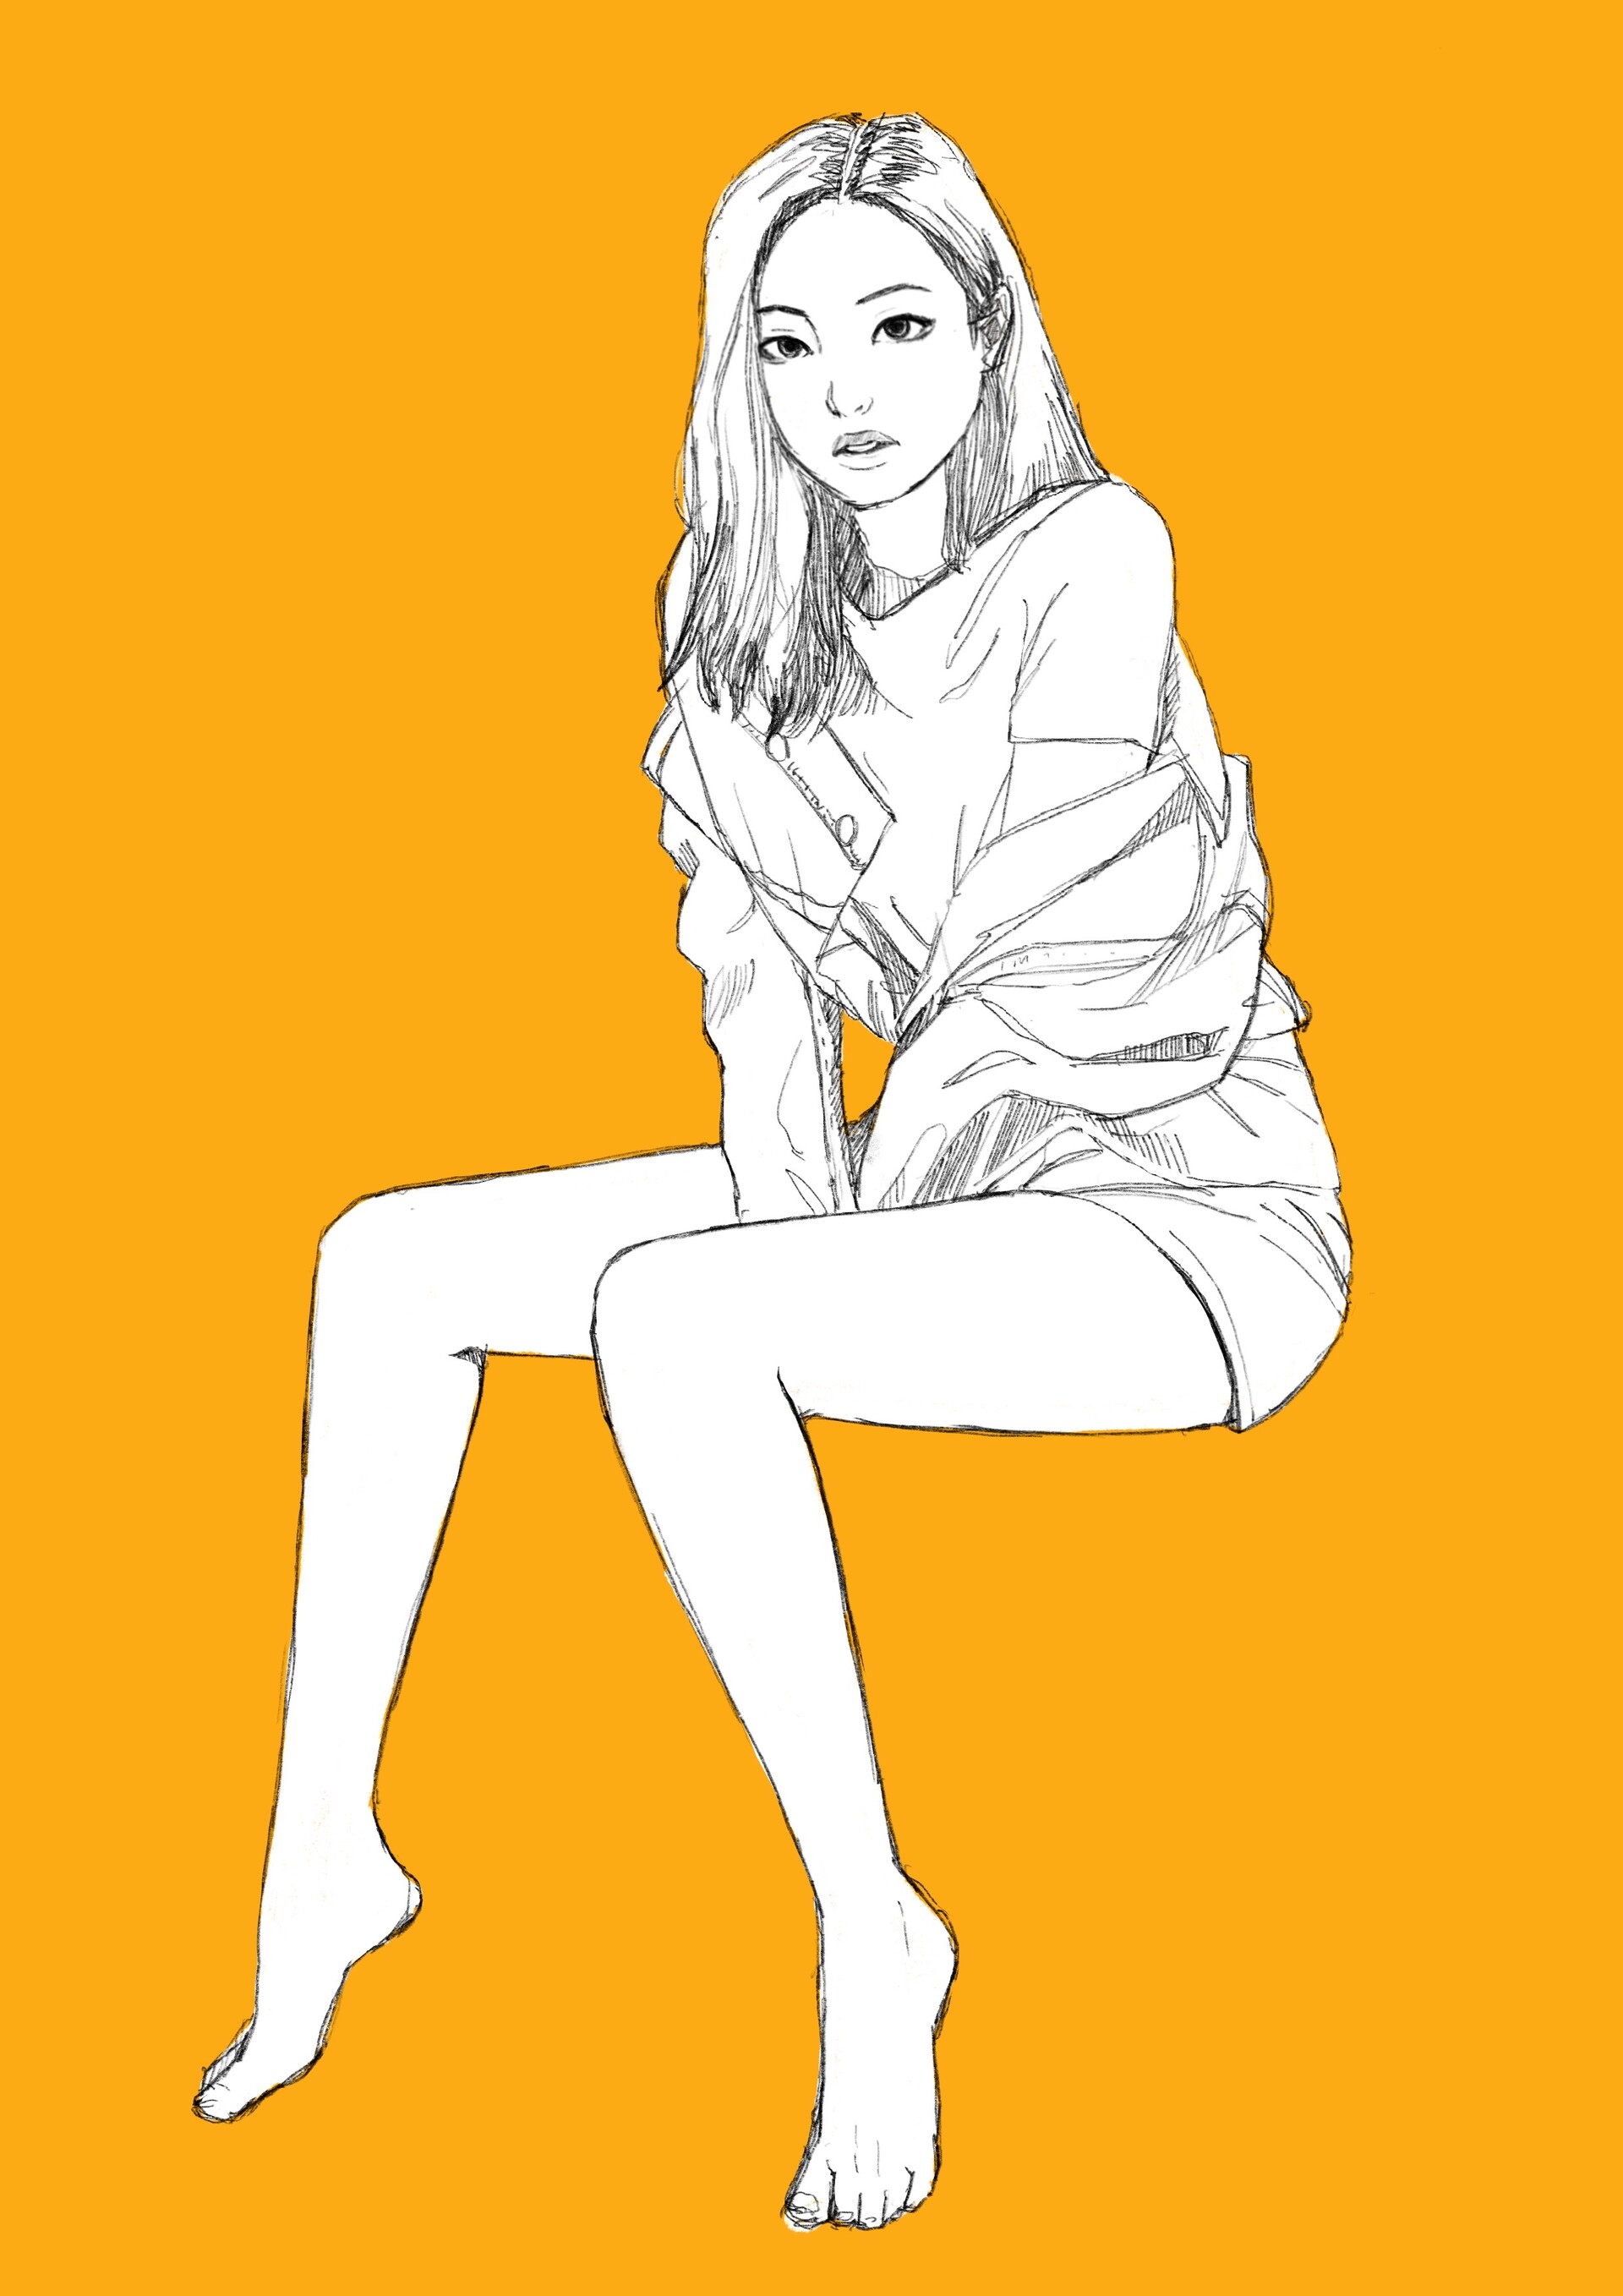 ArtStation - Sketch A Day - Jennie Kim